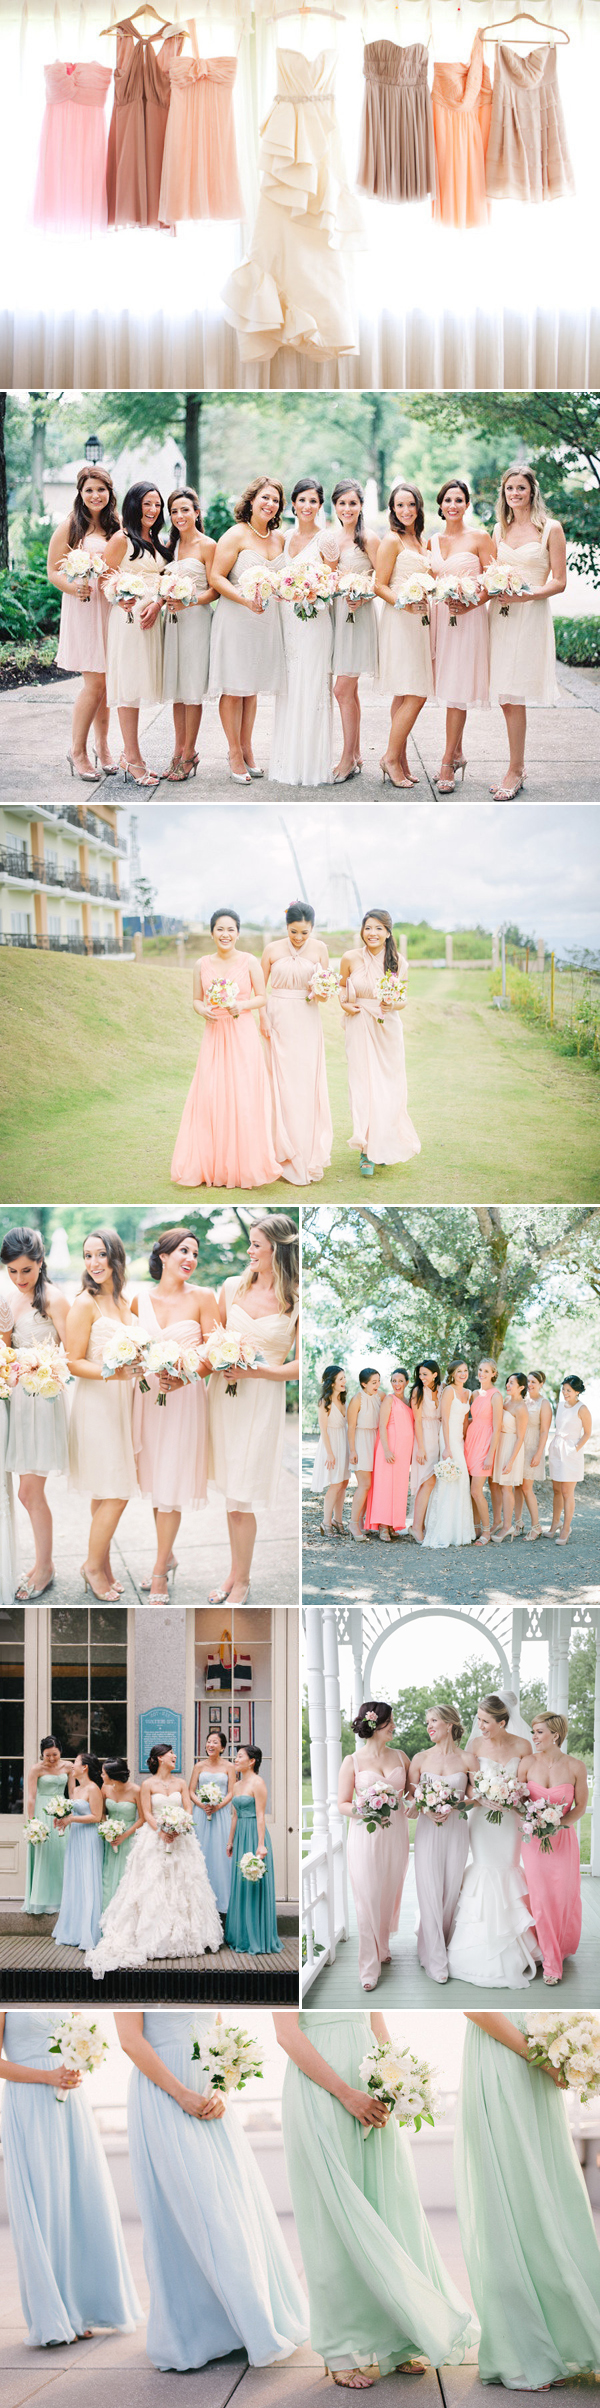 pastel mismatched bridesmaid dresses